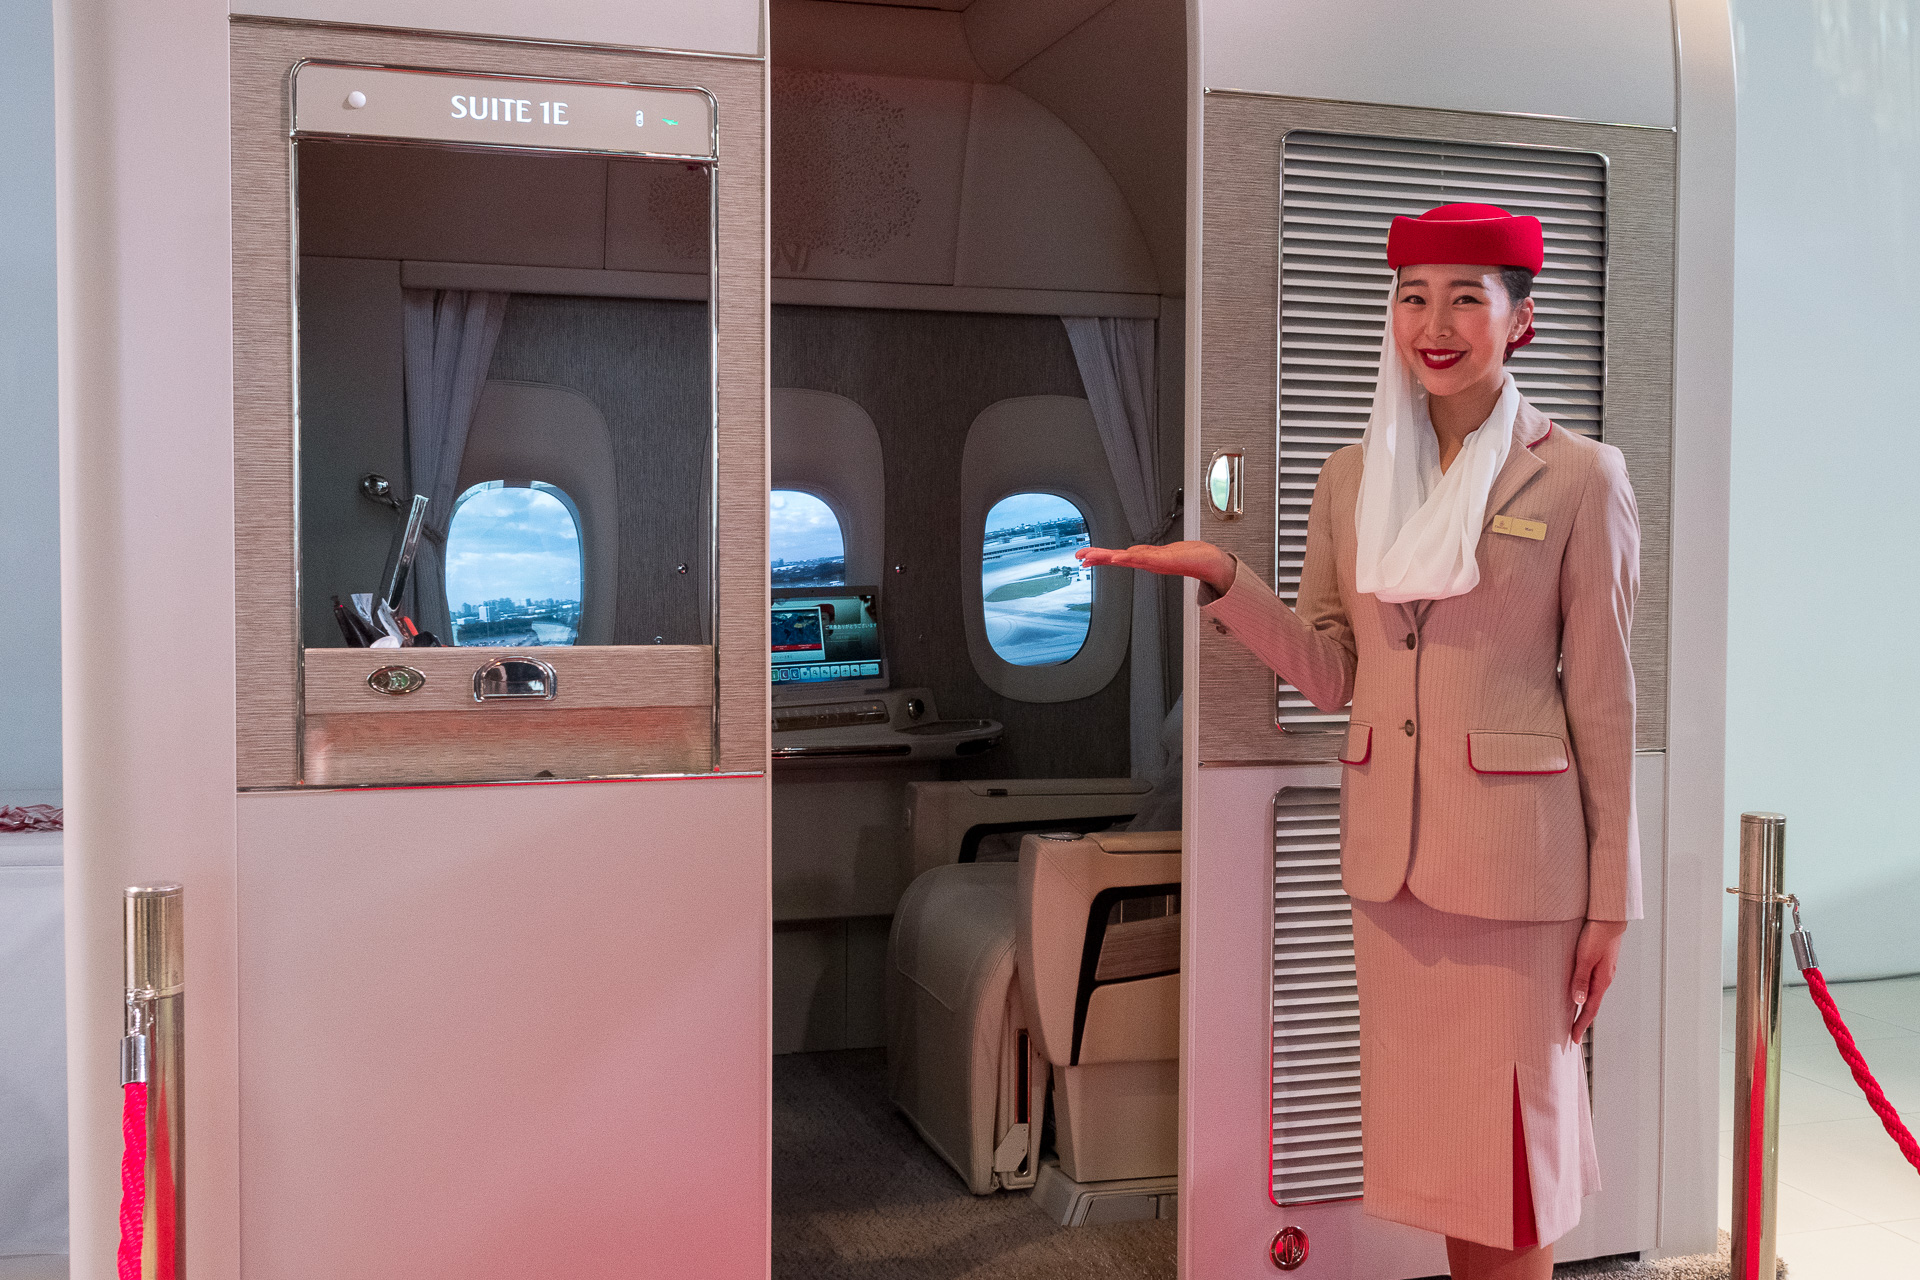 エミレーツ航空、最新の完全個室型ファーストクラス・スイート体験会を日本初実施。東京・六本木「Mercedes me」で2月16日まで